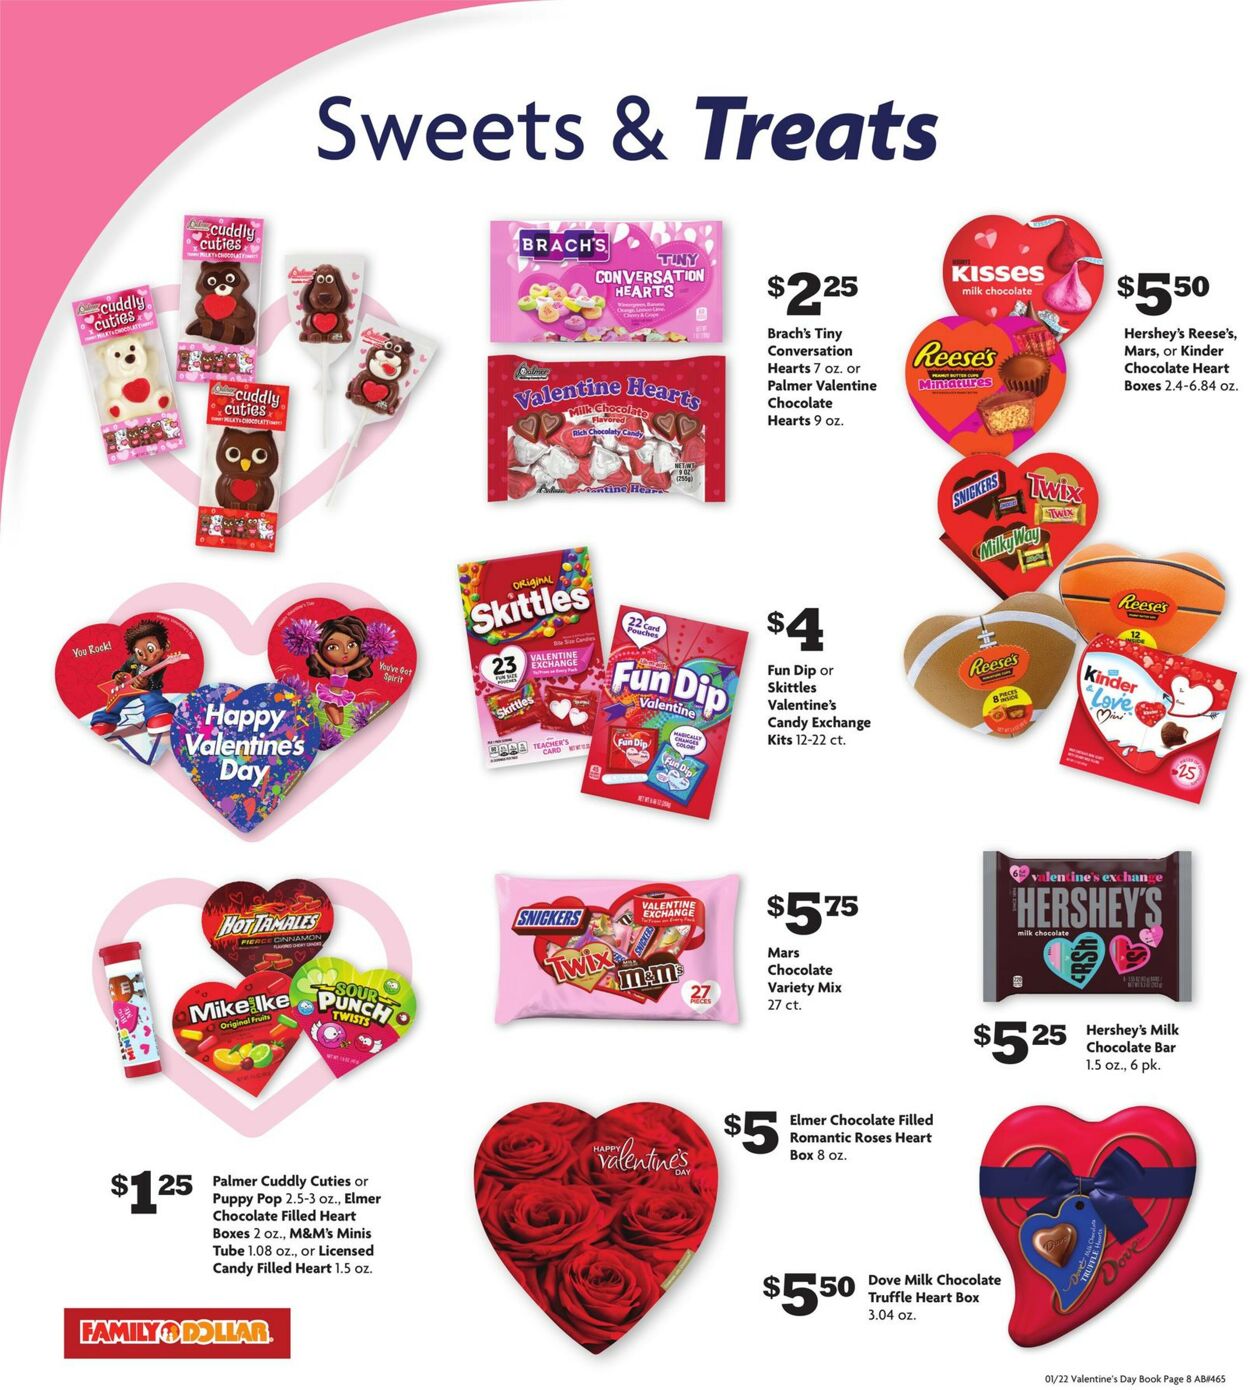 Brach's® Heart 2 Heart Tiny Conversation Hearts Candy, 30 oz - Mariano's